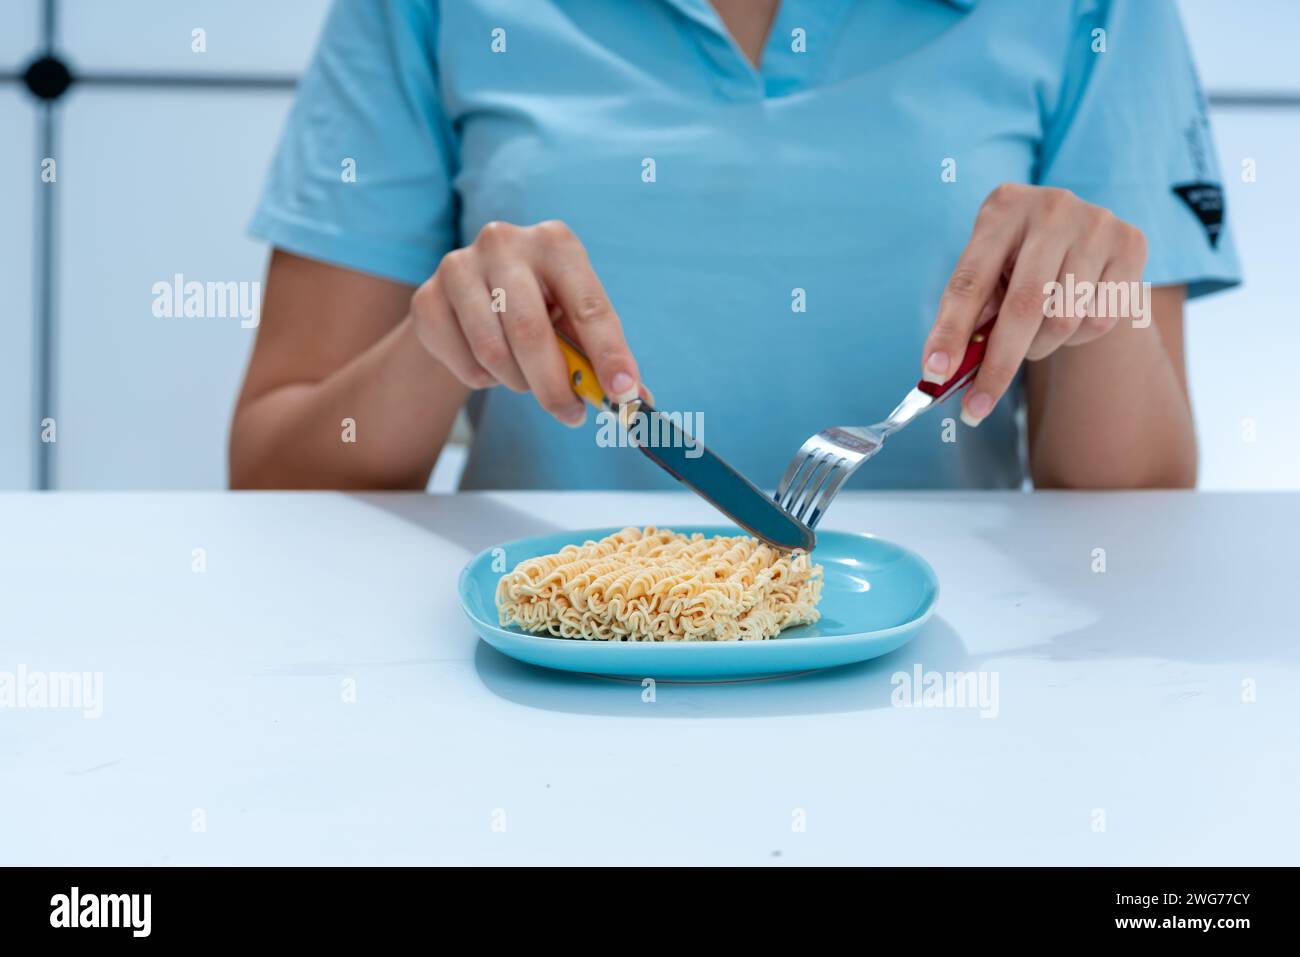 ragazza seduta al tavolo sul tavolo un piatto con un blocco di tagliatelle istantanee il concetto di cibo malsano Foto Stock